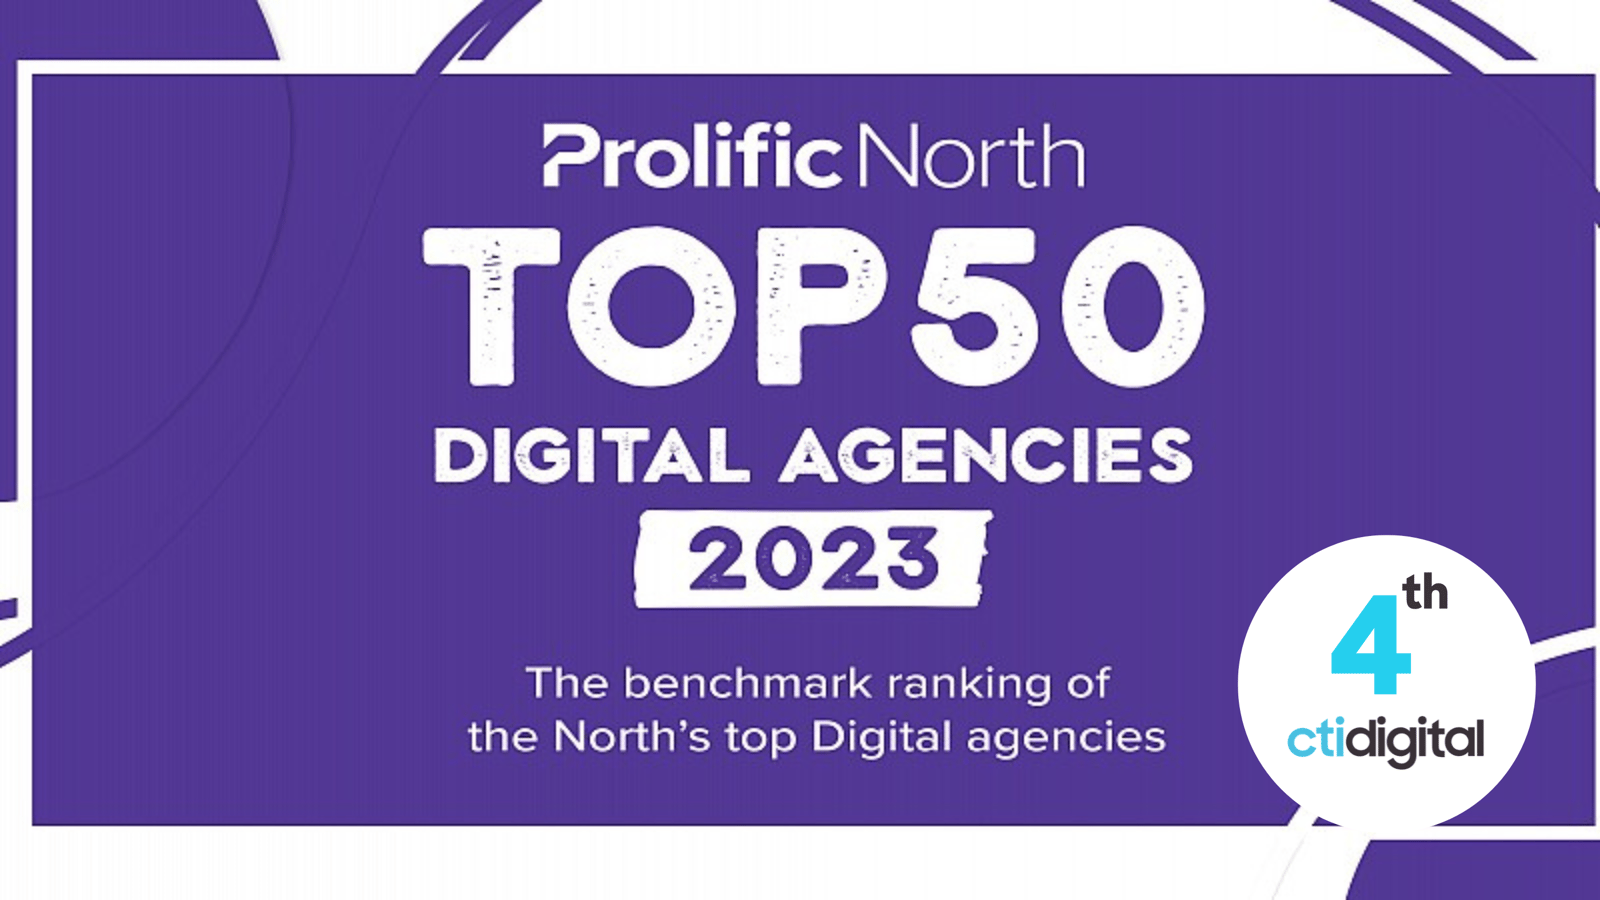 Prolific North Top 50 Digital Agencies 2023 graphic with cti digital